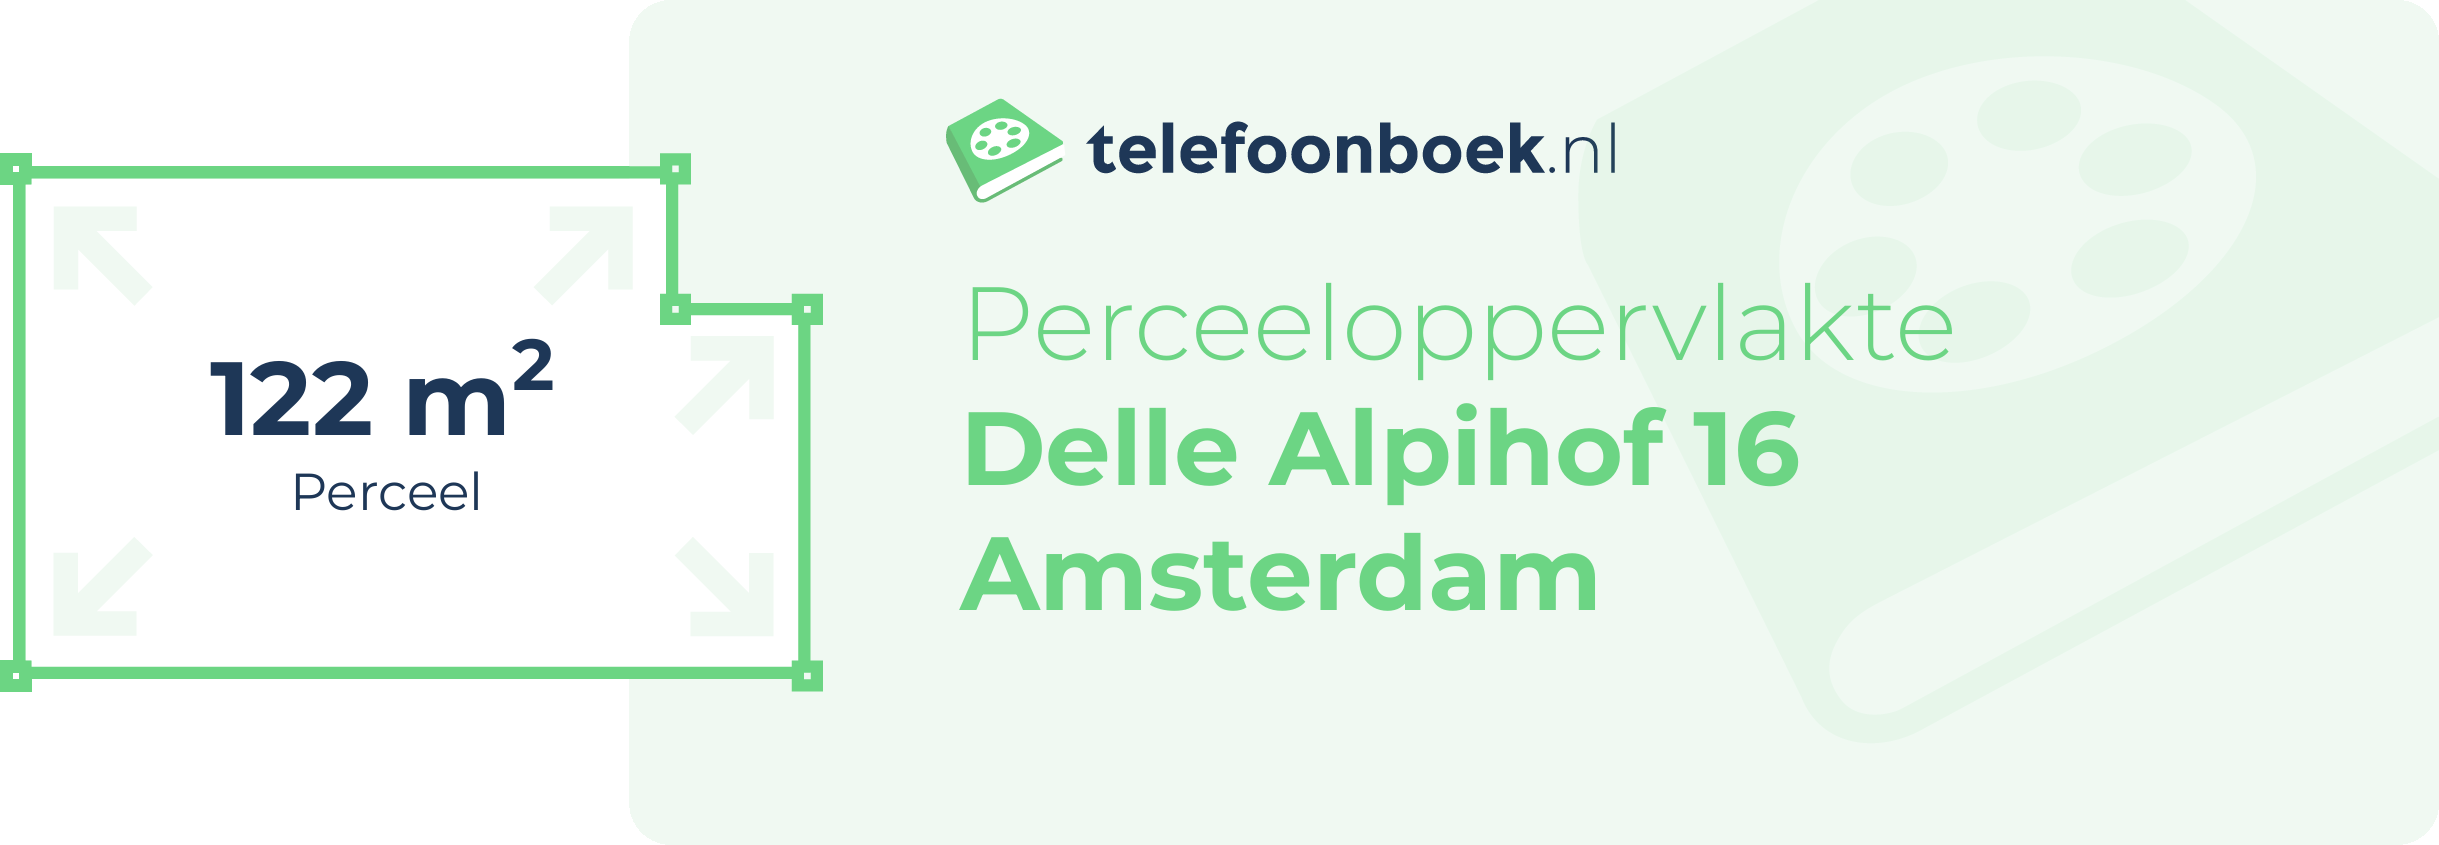 Perceeloppervlakte Delle Alpihof 16 Amsterdam